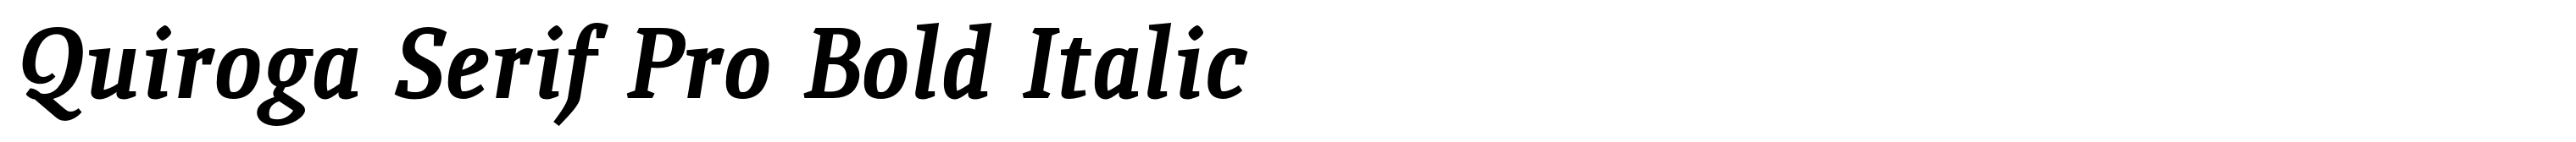 Quiroga Serif Pro Bold Italic